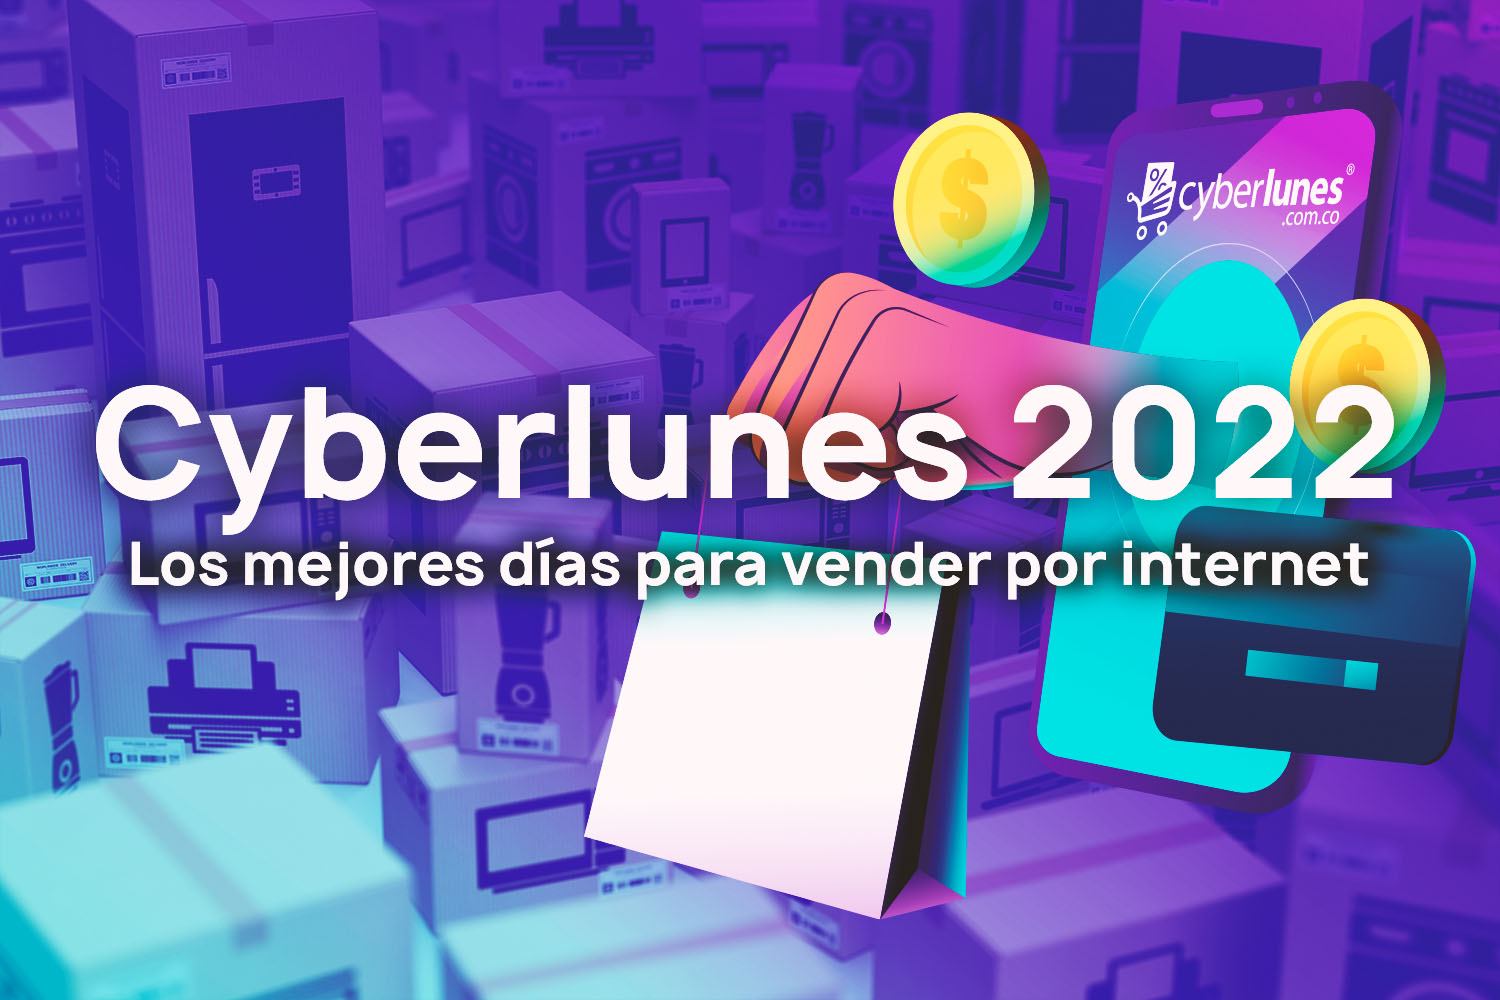 Cyberlunes 2022 Los mejores días para vender por internet